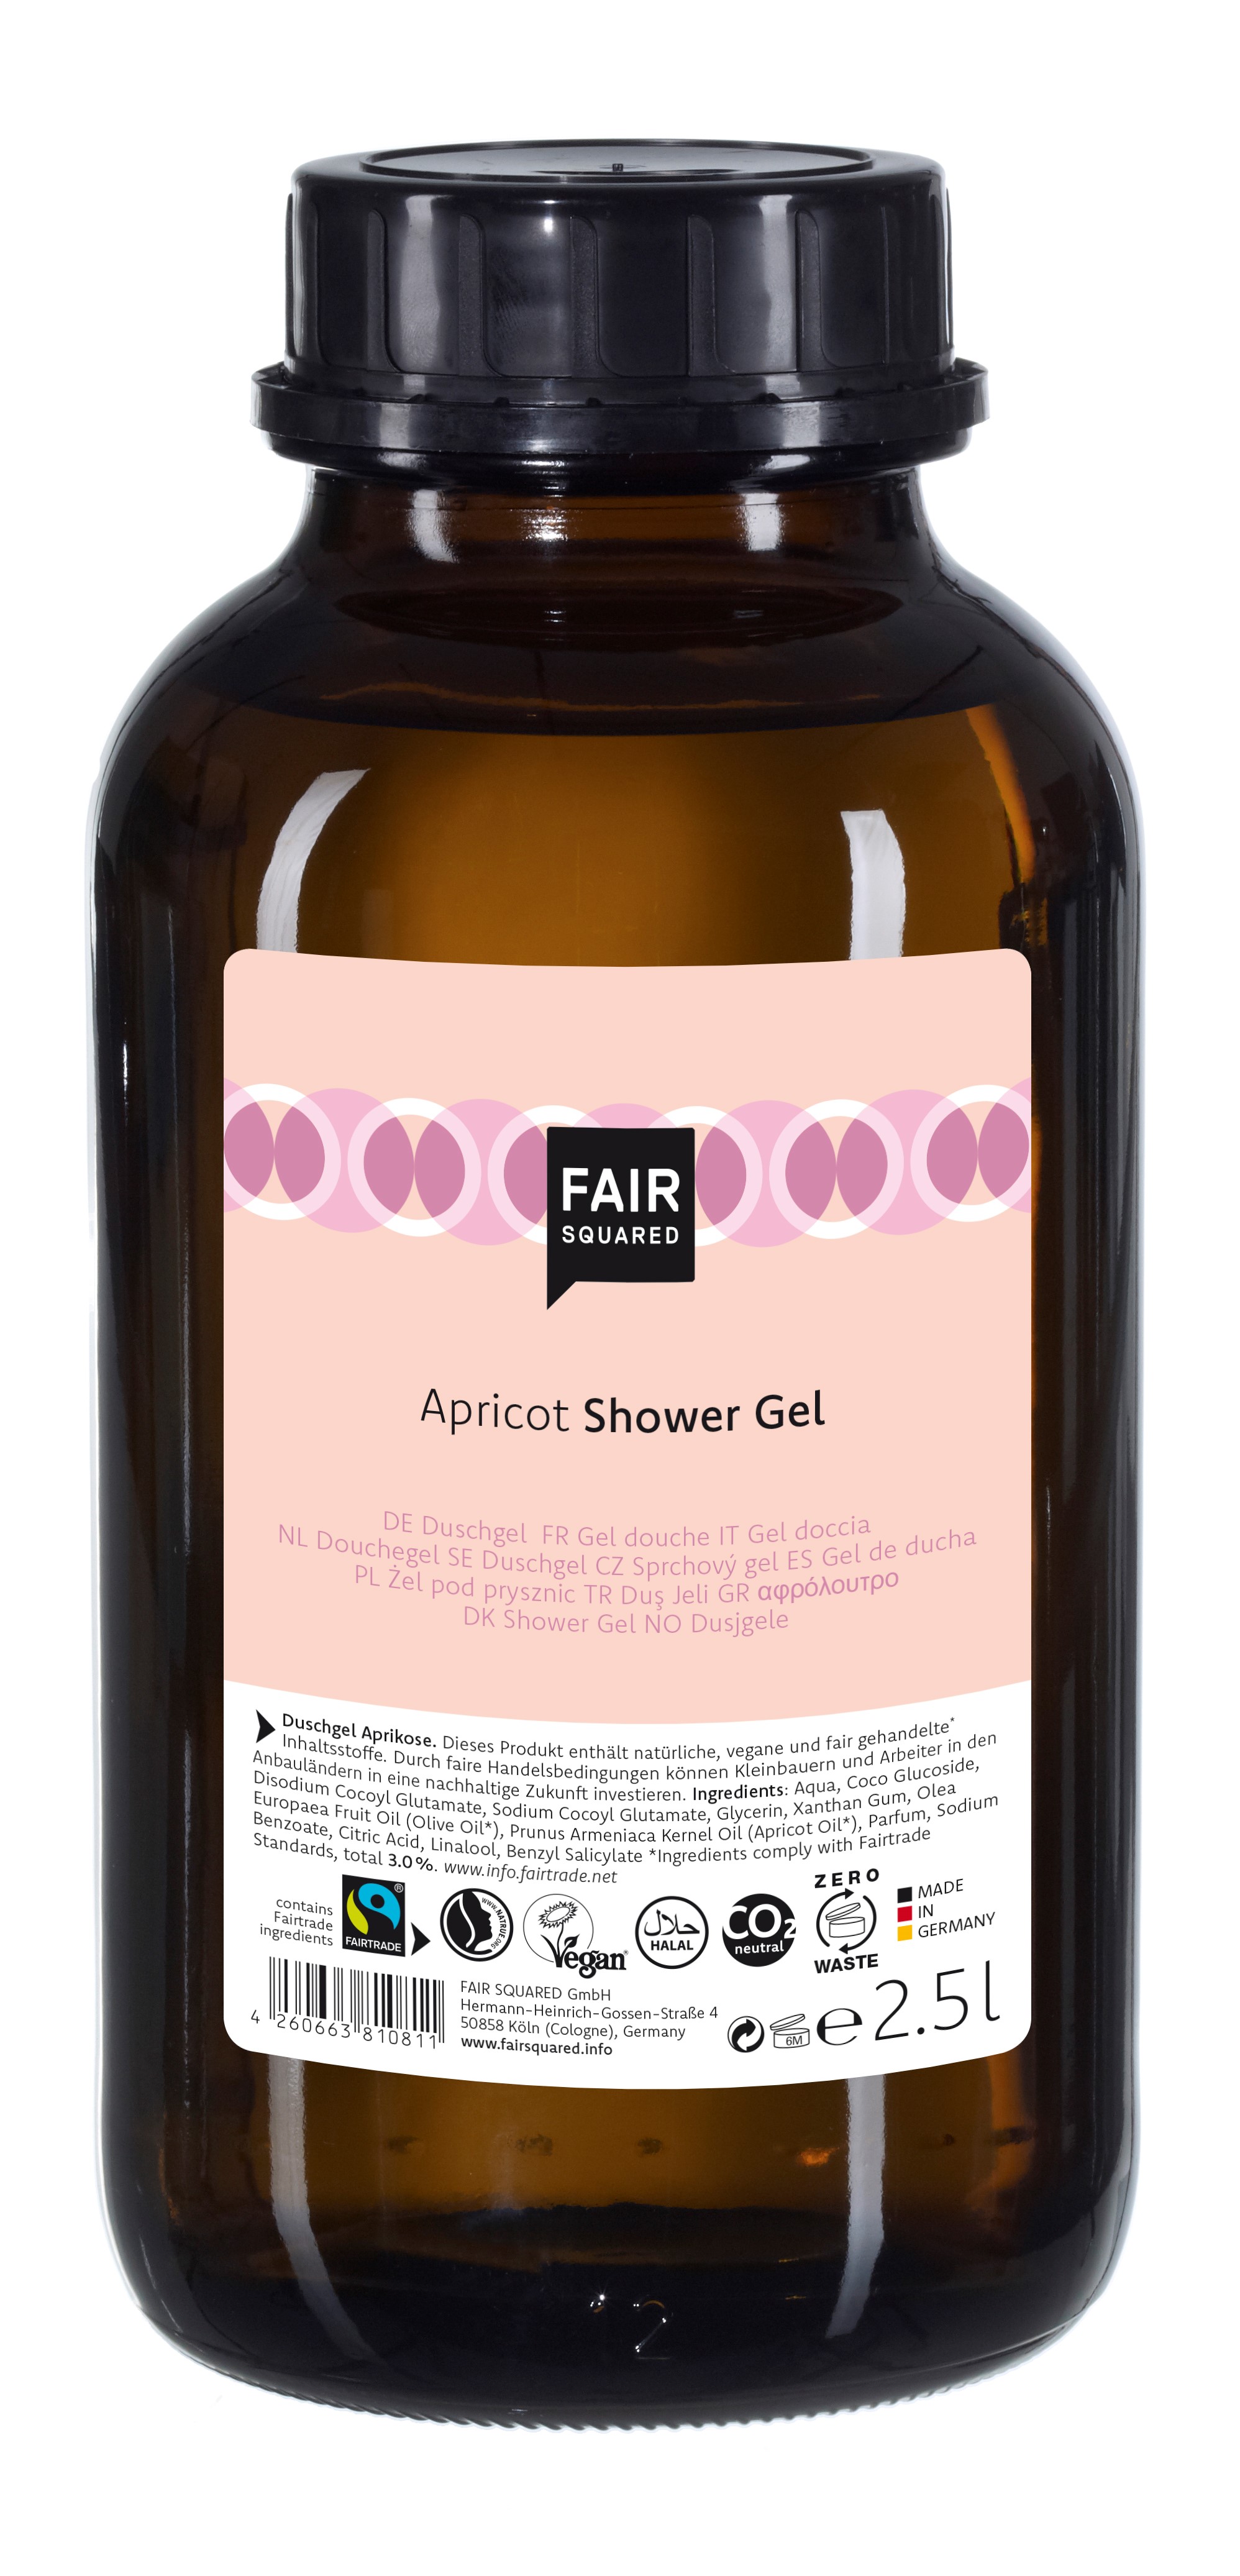 Se FAIR SQUARED - Storkøb 2,5 Liter Flydende økologisk Shower Gel med Apricot hos Organic Beauty Supply